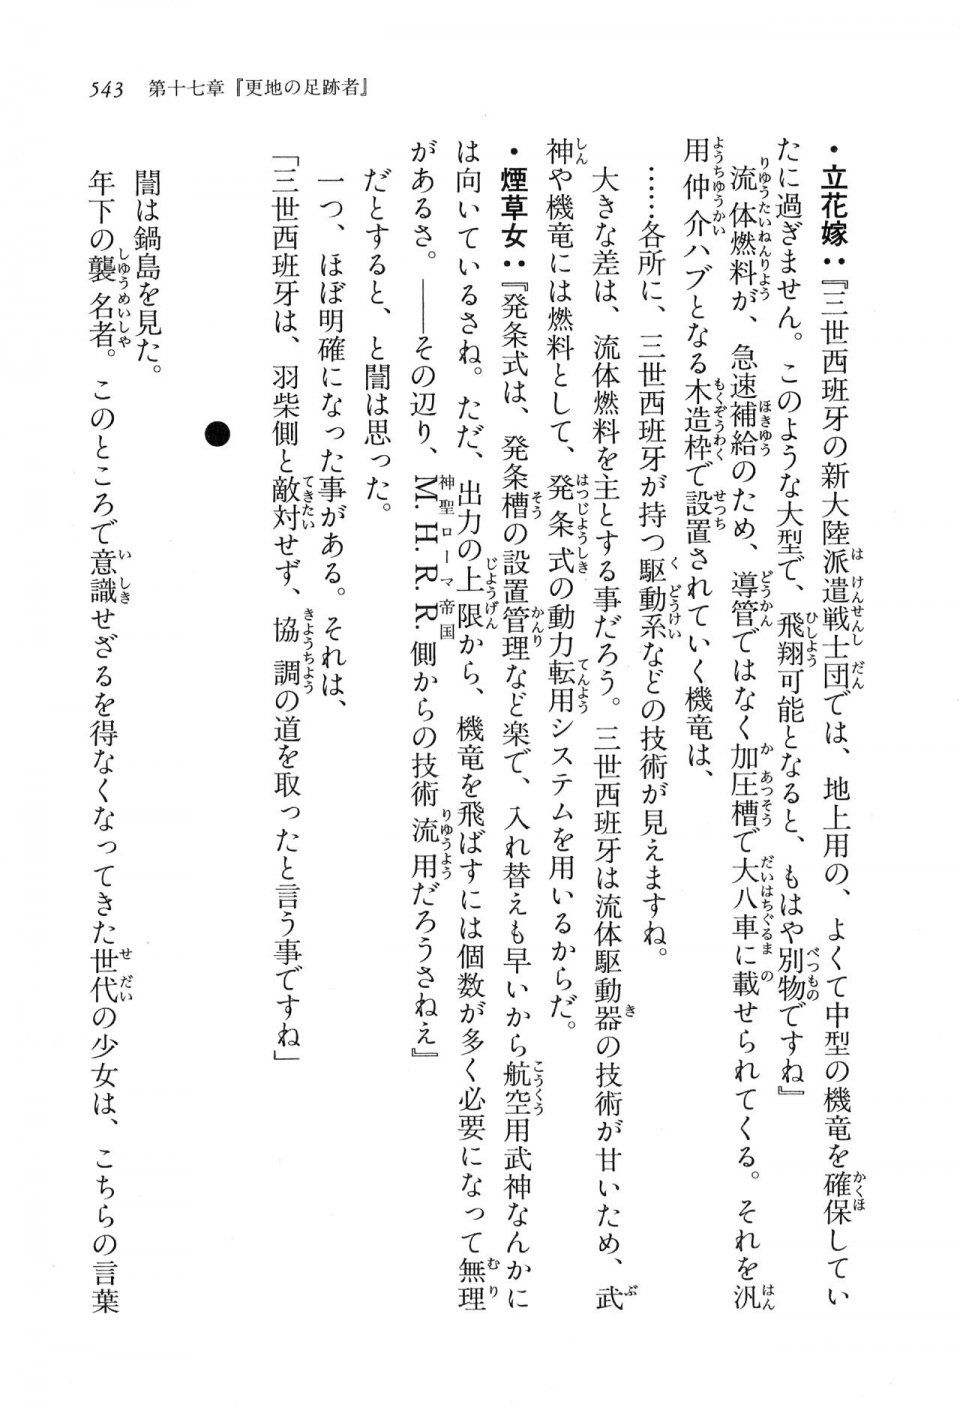 Kyoukai Senjou no Horizon LN Vol 16(7A) - Photo #543